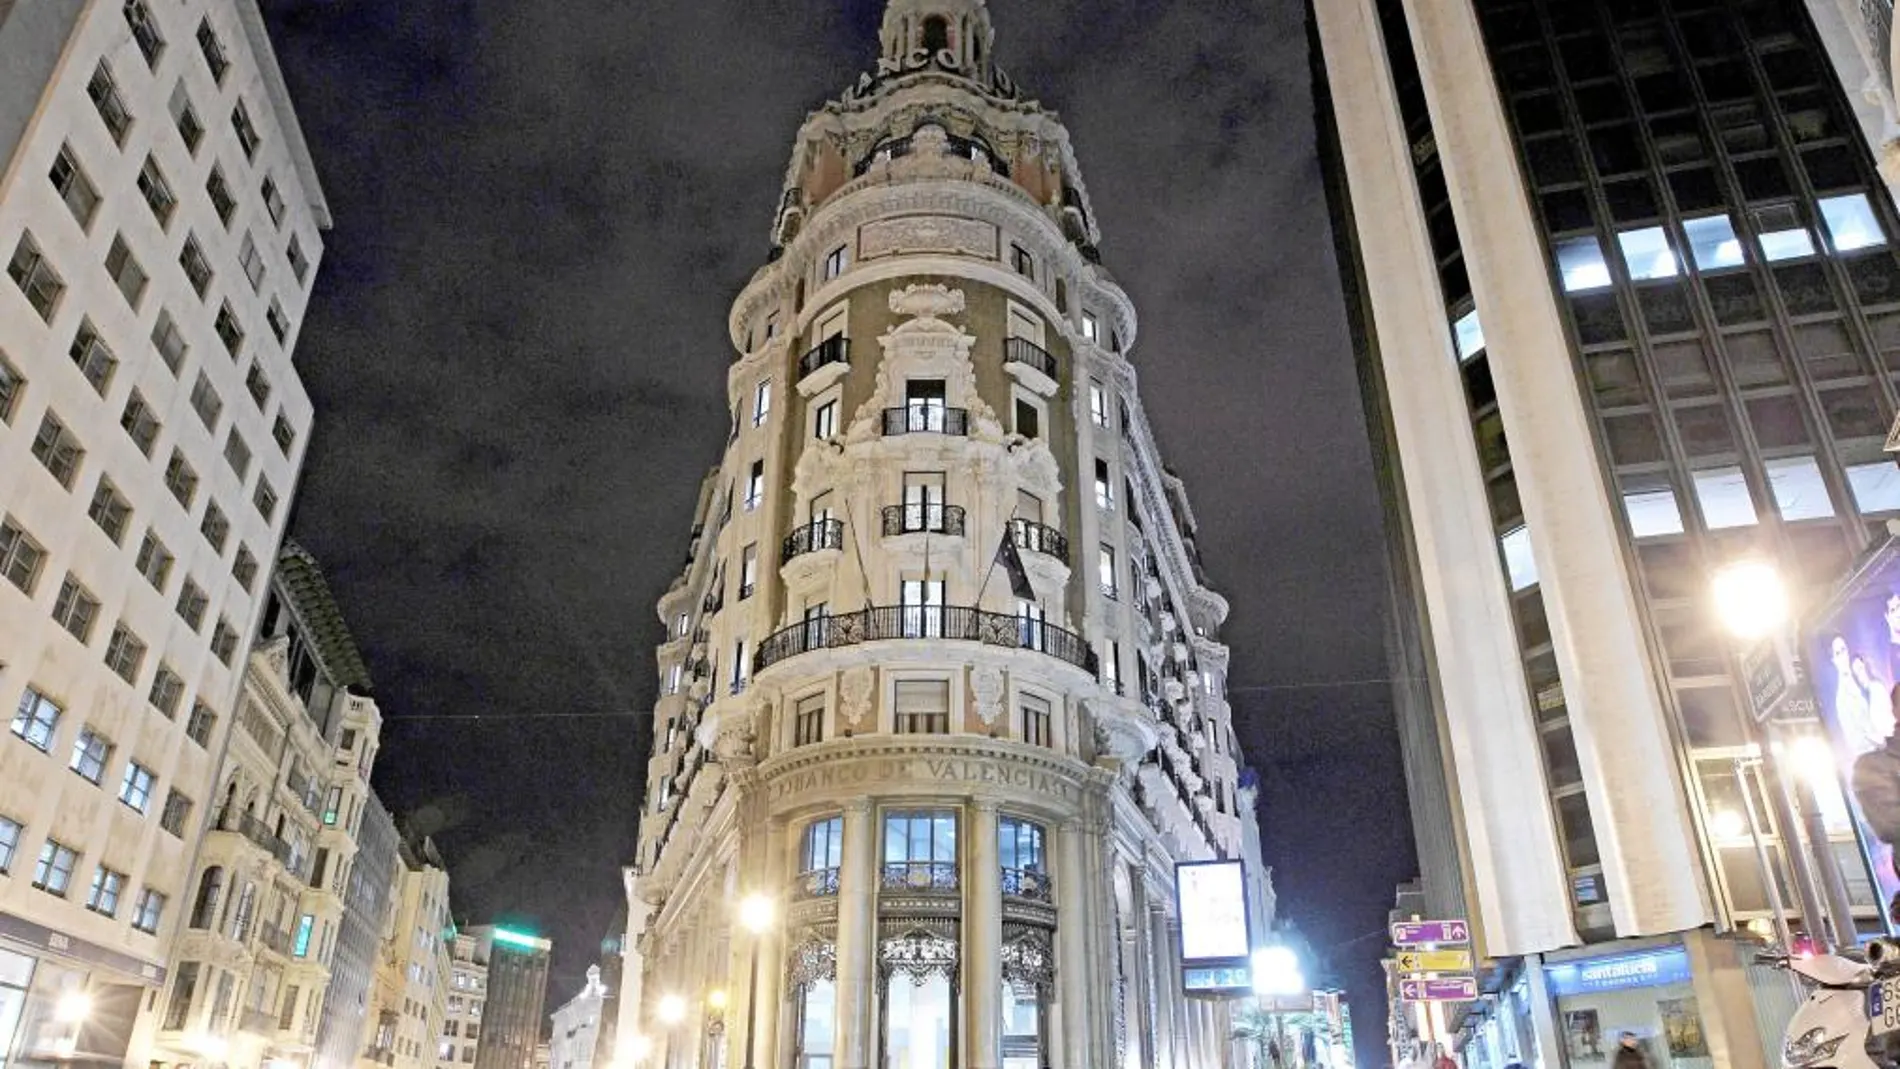 Sede del Banco de Valencia contra los que Urbem ha actuado judicialmente